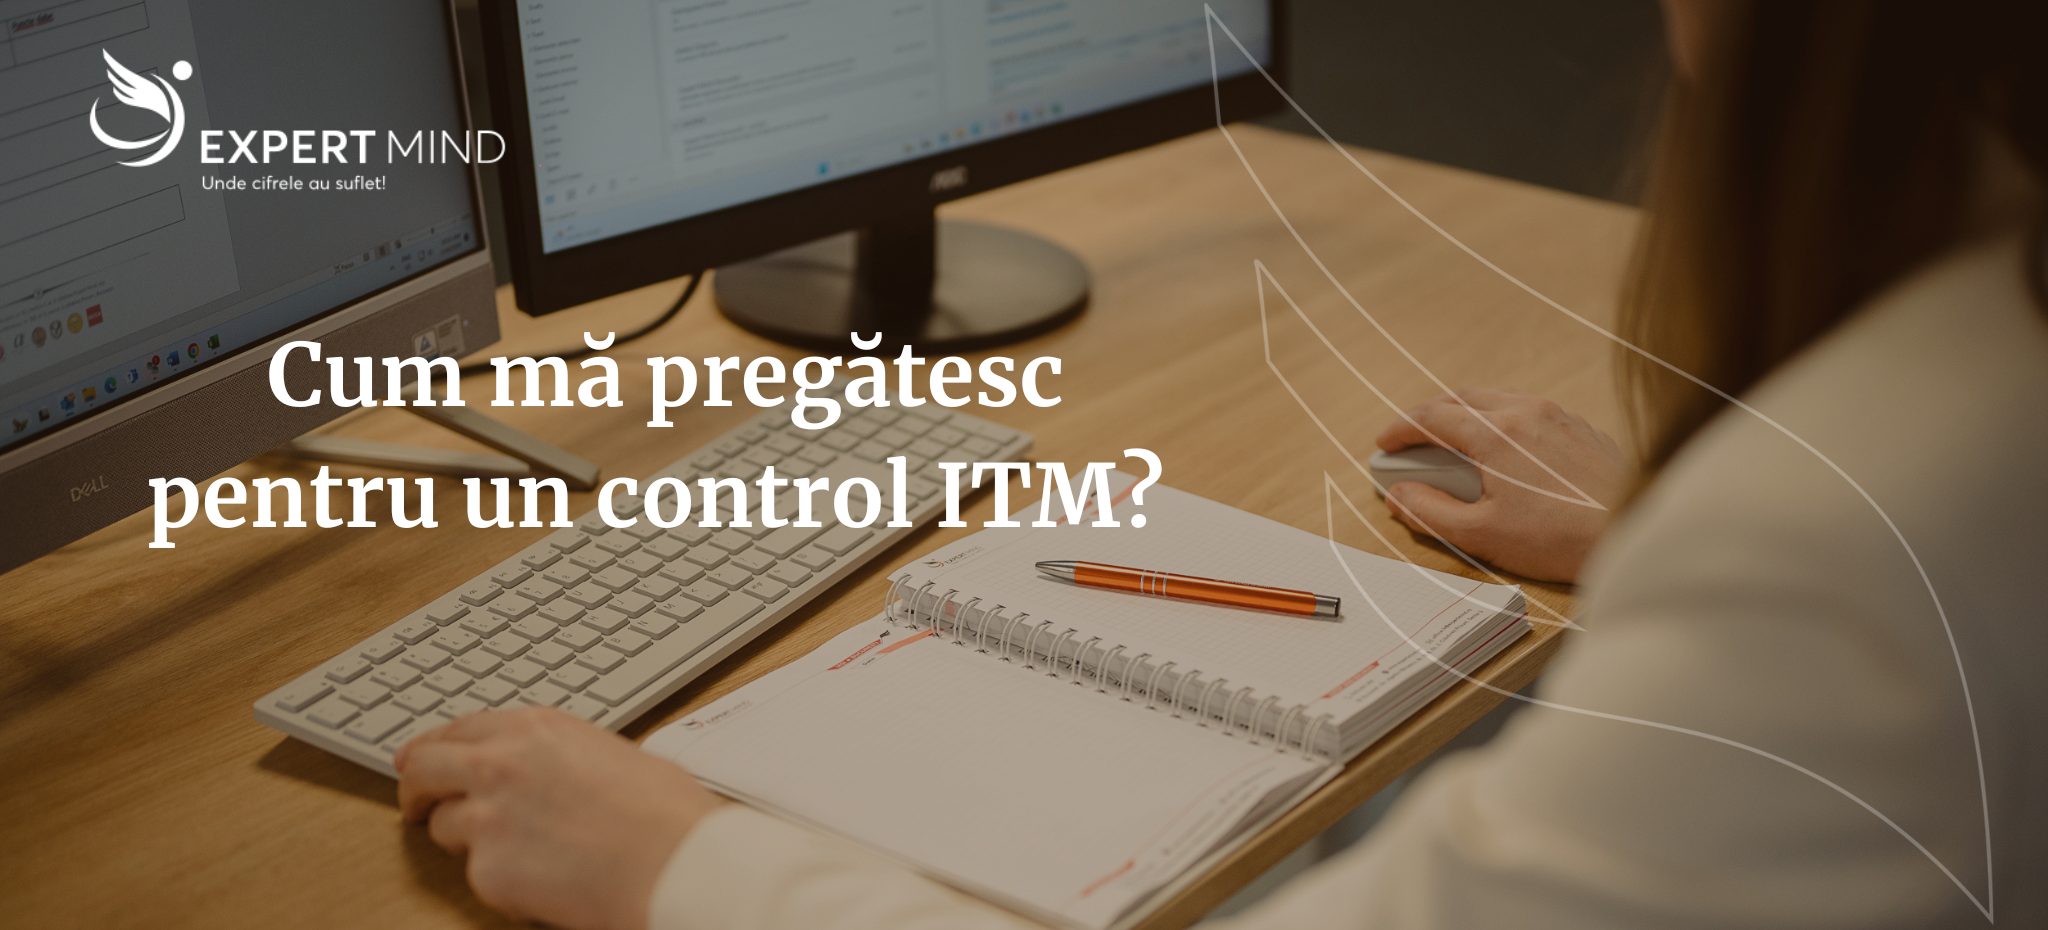 Cum mă pregătesc pentru un control ITM?